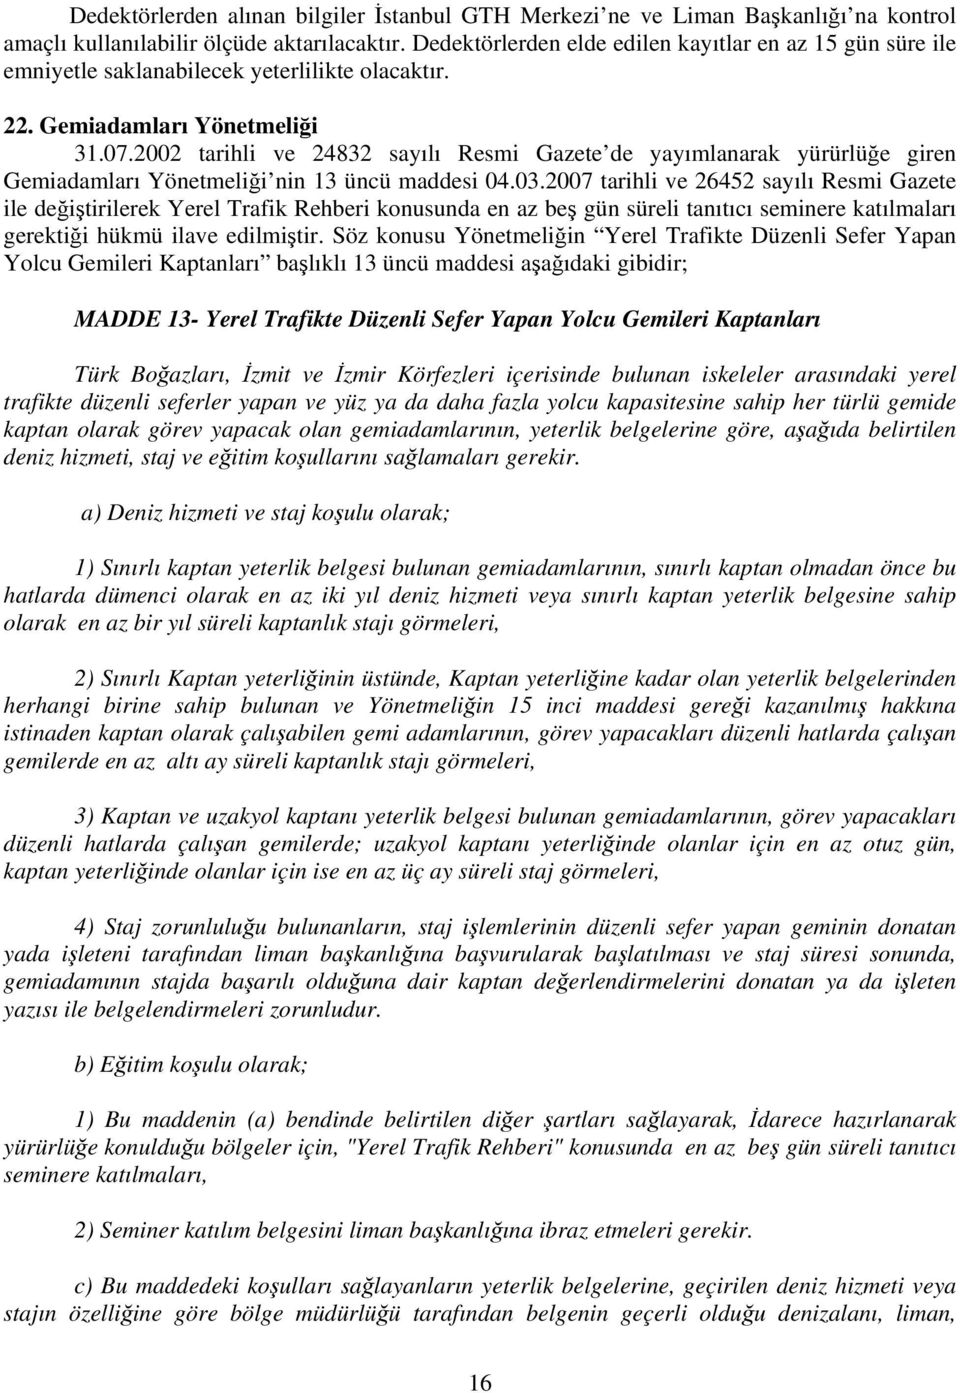 2002 tarihli ve 24832 sayılı Resmi Gazete de yayımlanarak yürürlüğe giren Gemiadamları Yönetmeliği nin 13 üncü maddesi 04.03.